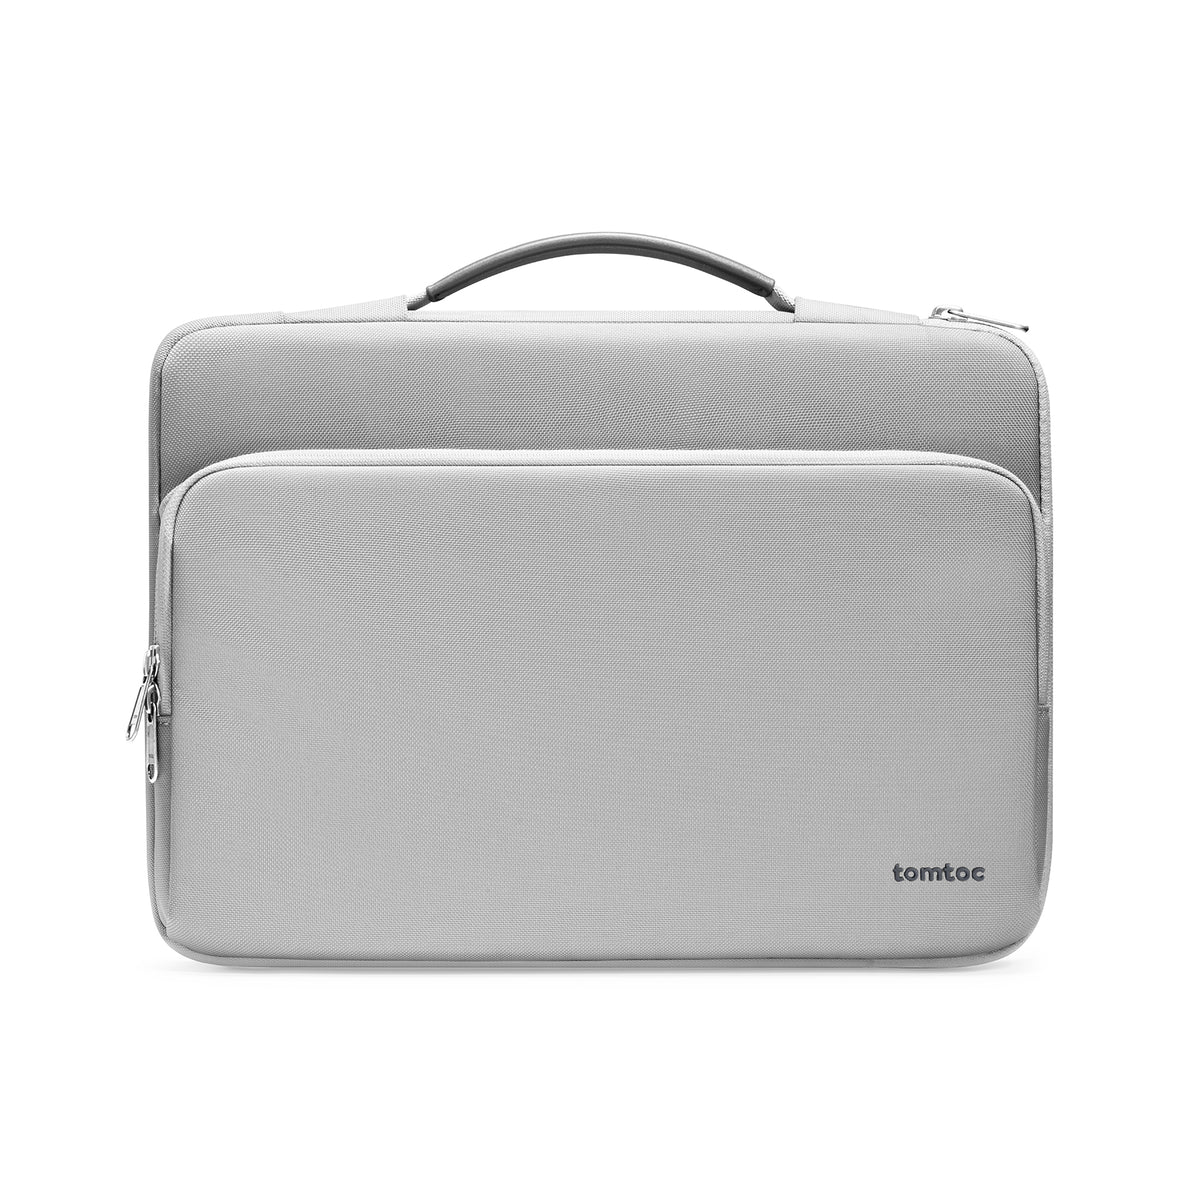 Defender A14 Laptop Briefcase (Macbook) 13" - Black